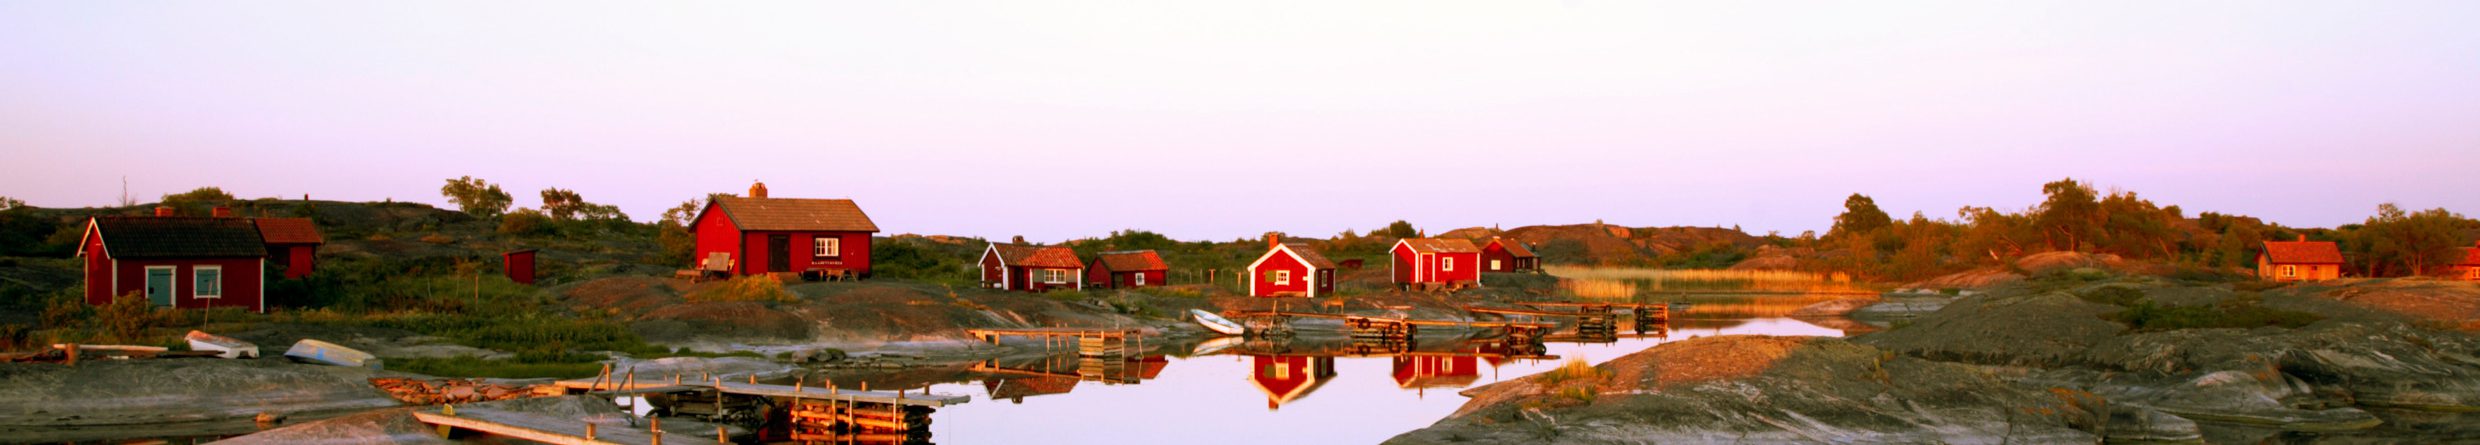 Schäreninseln vor Stockholm in Schweden Urlaub auf den Schäreninseln: Ein Ferienhaus am Meer an der Ostküste vor Stockholm